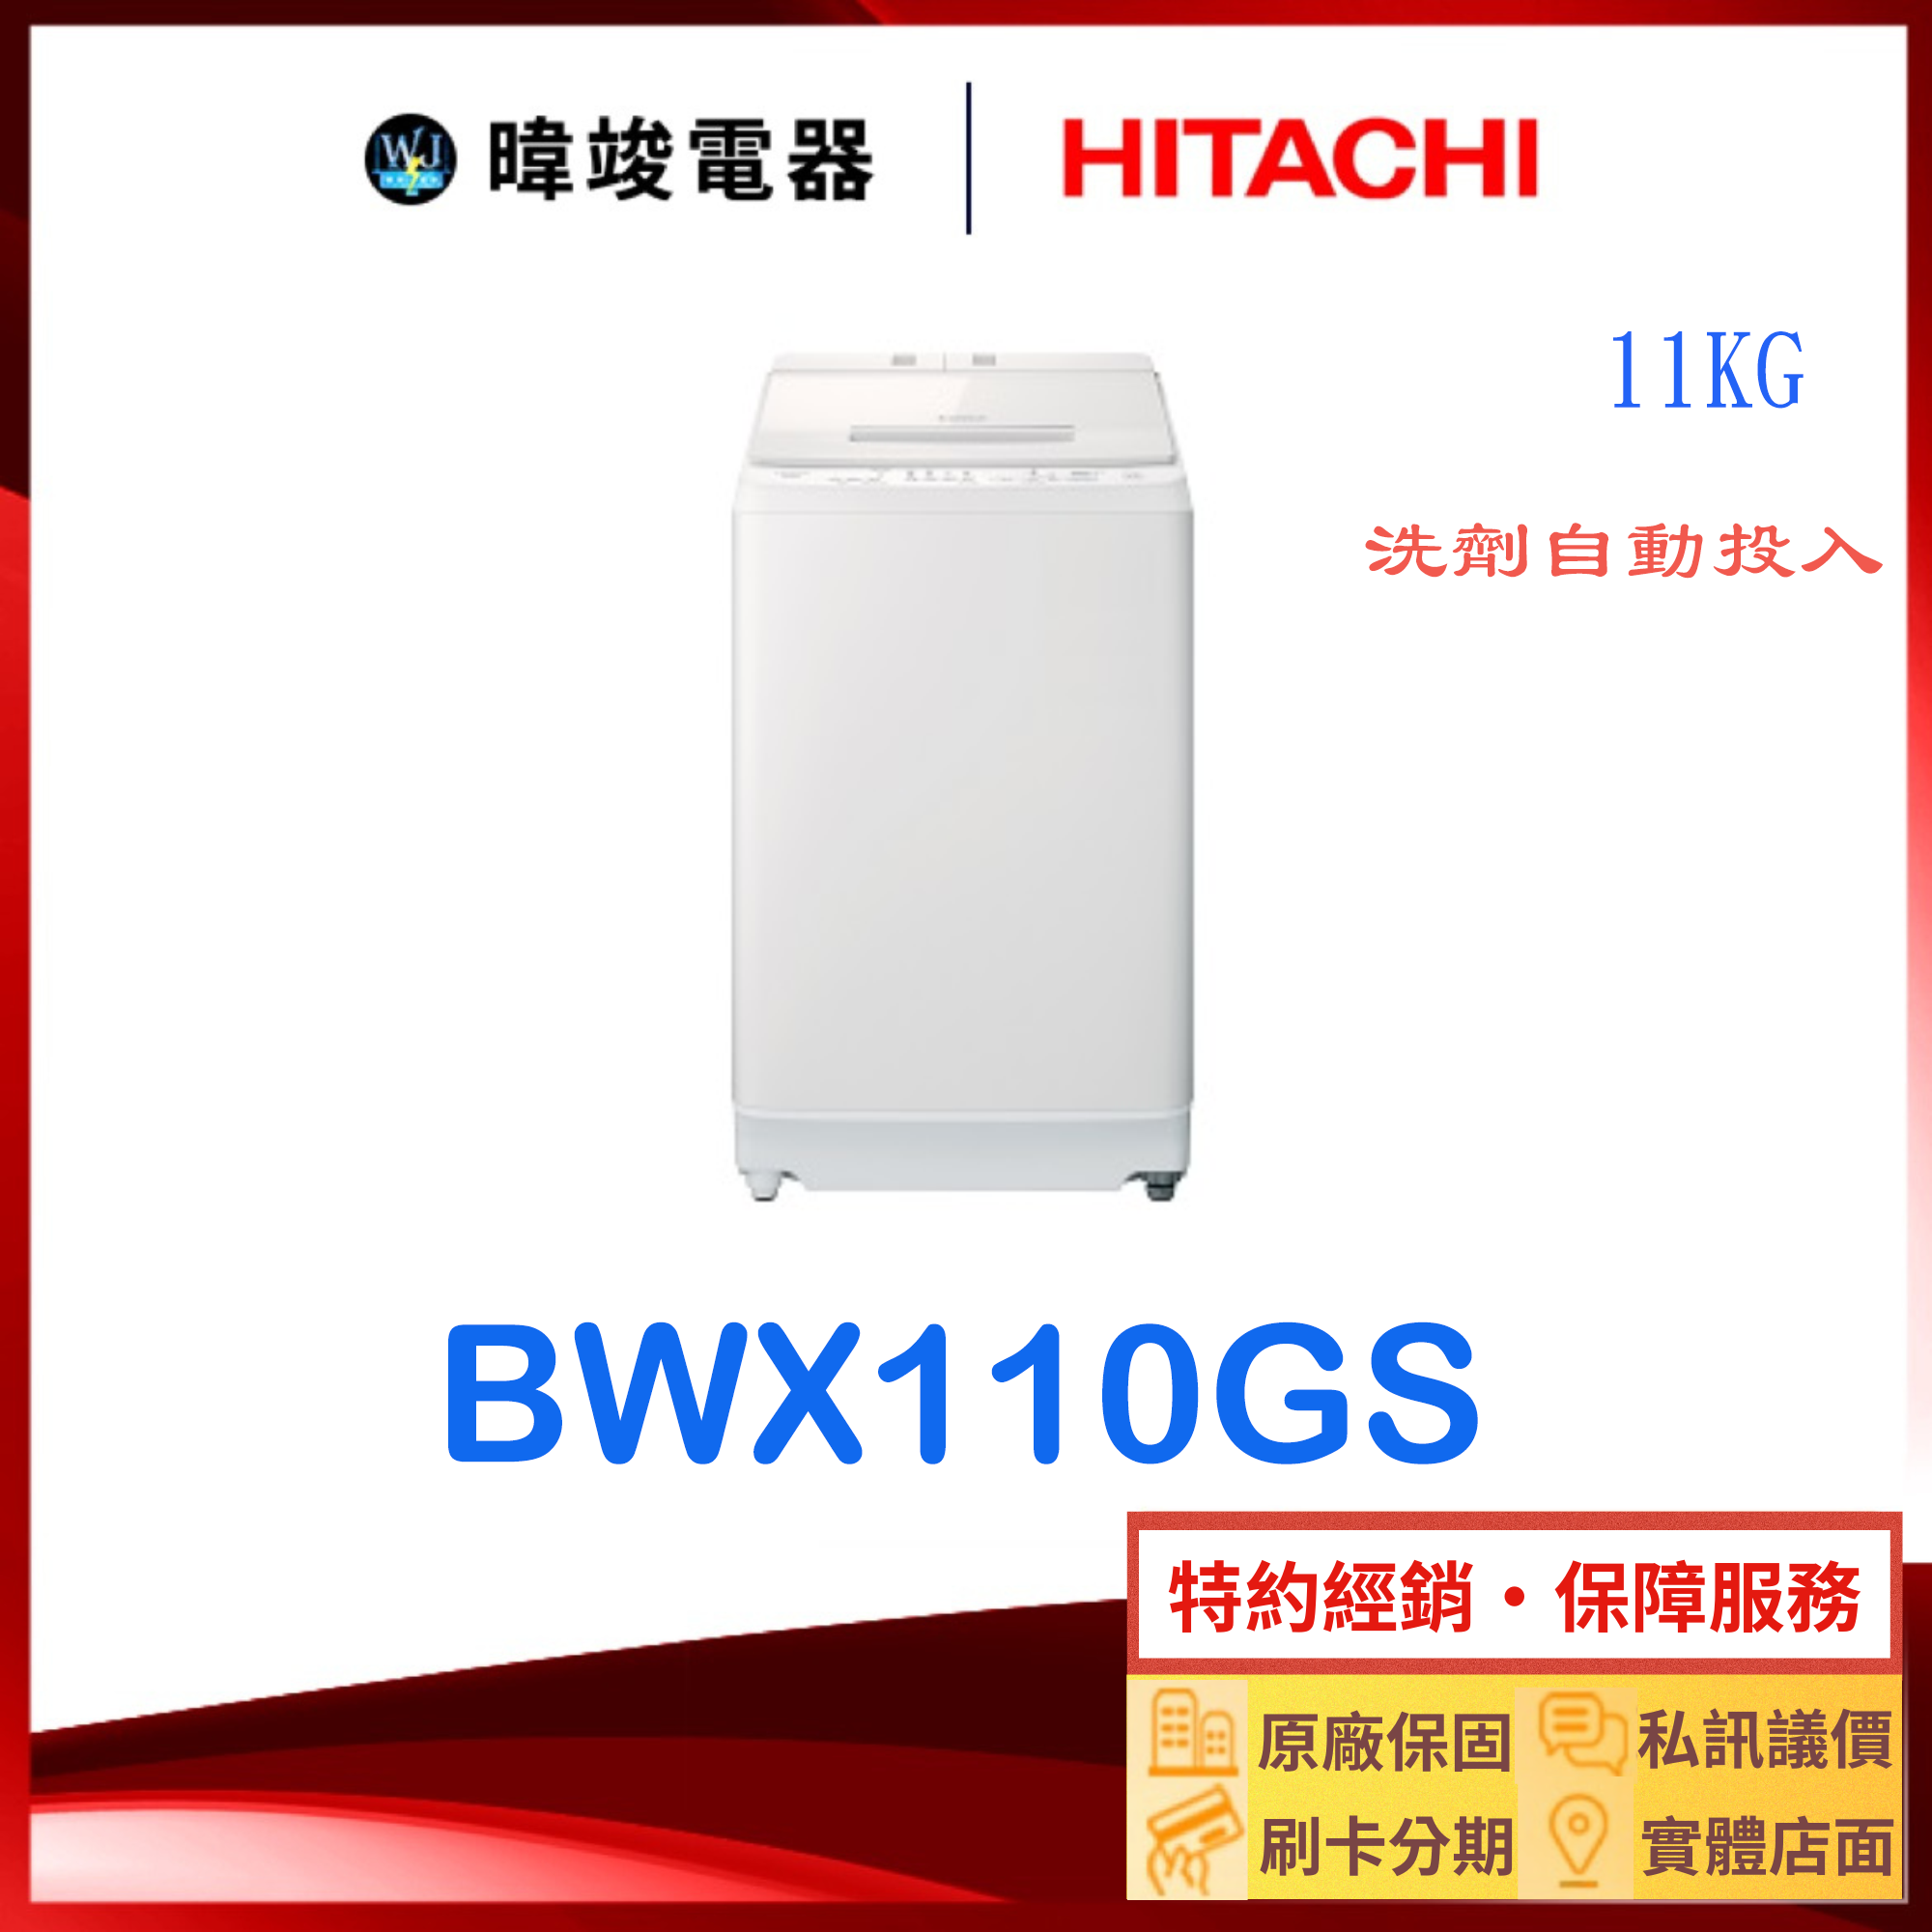 【獨家折扣碼】HITACHI 日立 BWX110GS 洗劑自動投入洗衣機 11kg 洗衣機 原廠保固